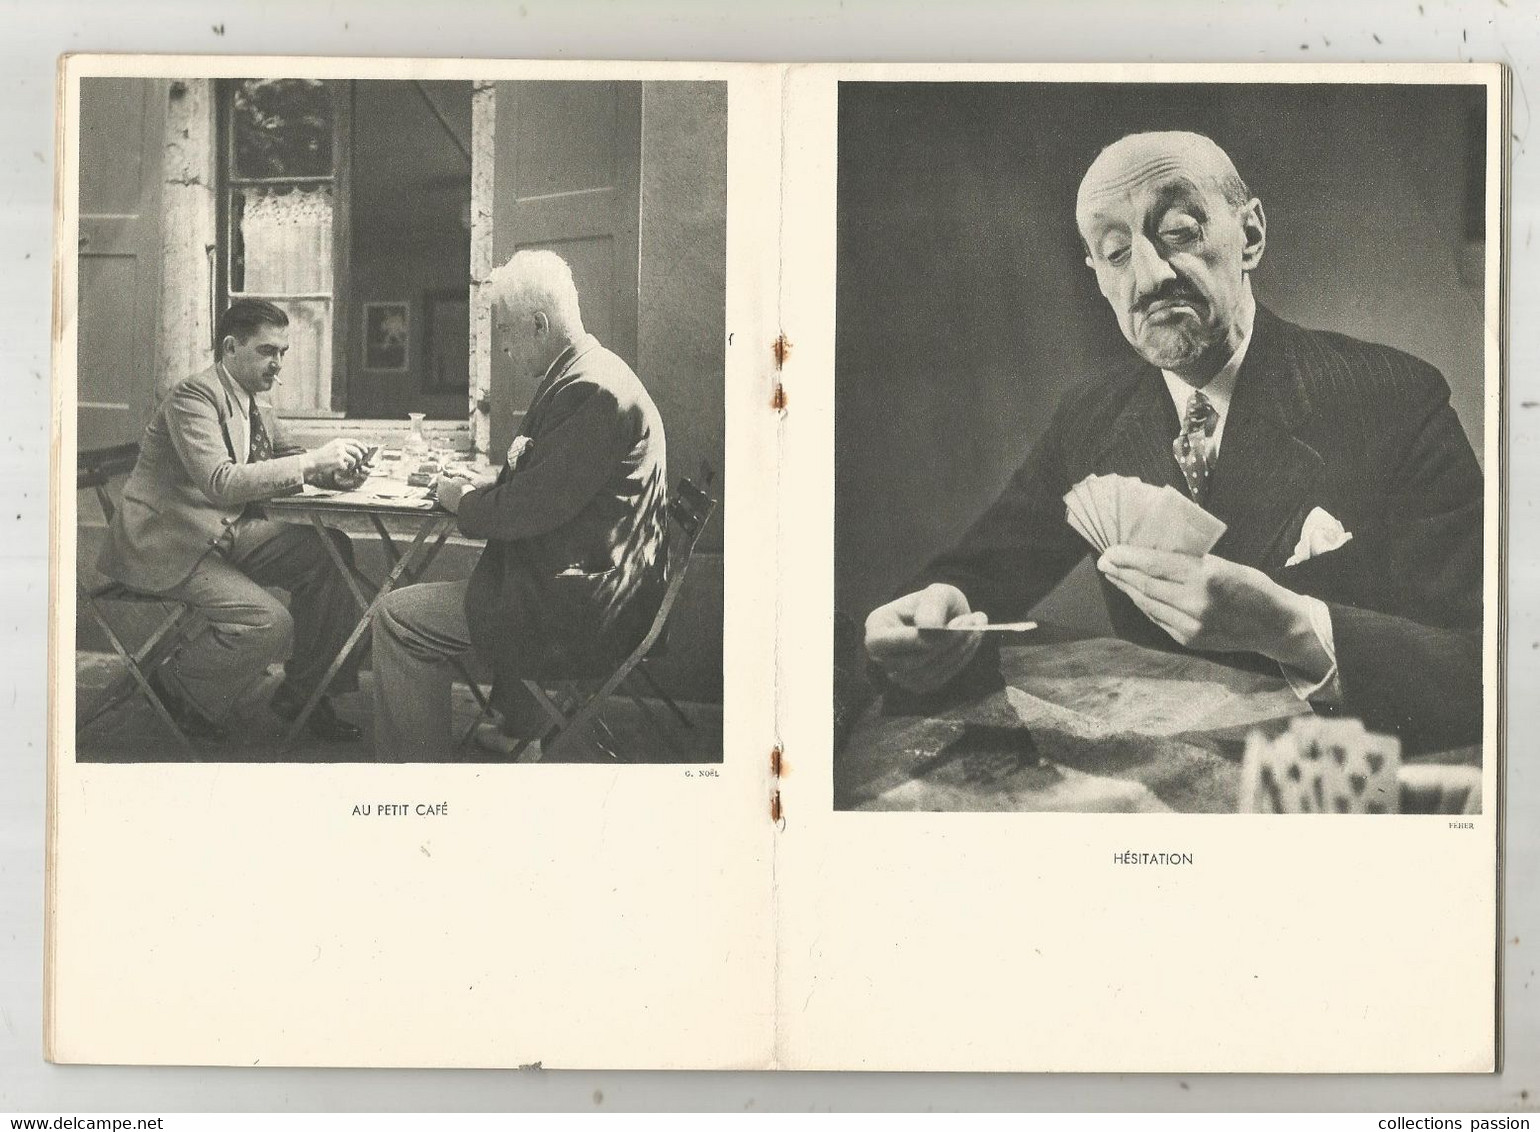 Photographie, Documents Photographiques , MIEUX VIVRE , LES CARTES Par T. Bernard, N° 1 , 1938,  Frais Fr 2.25 E - Fotografie